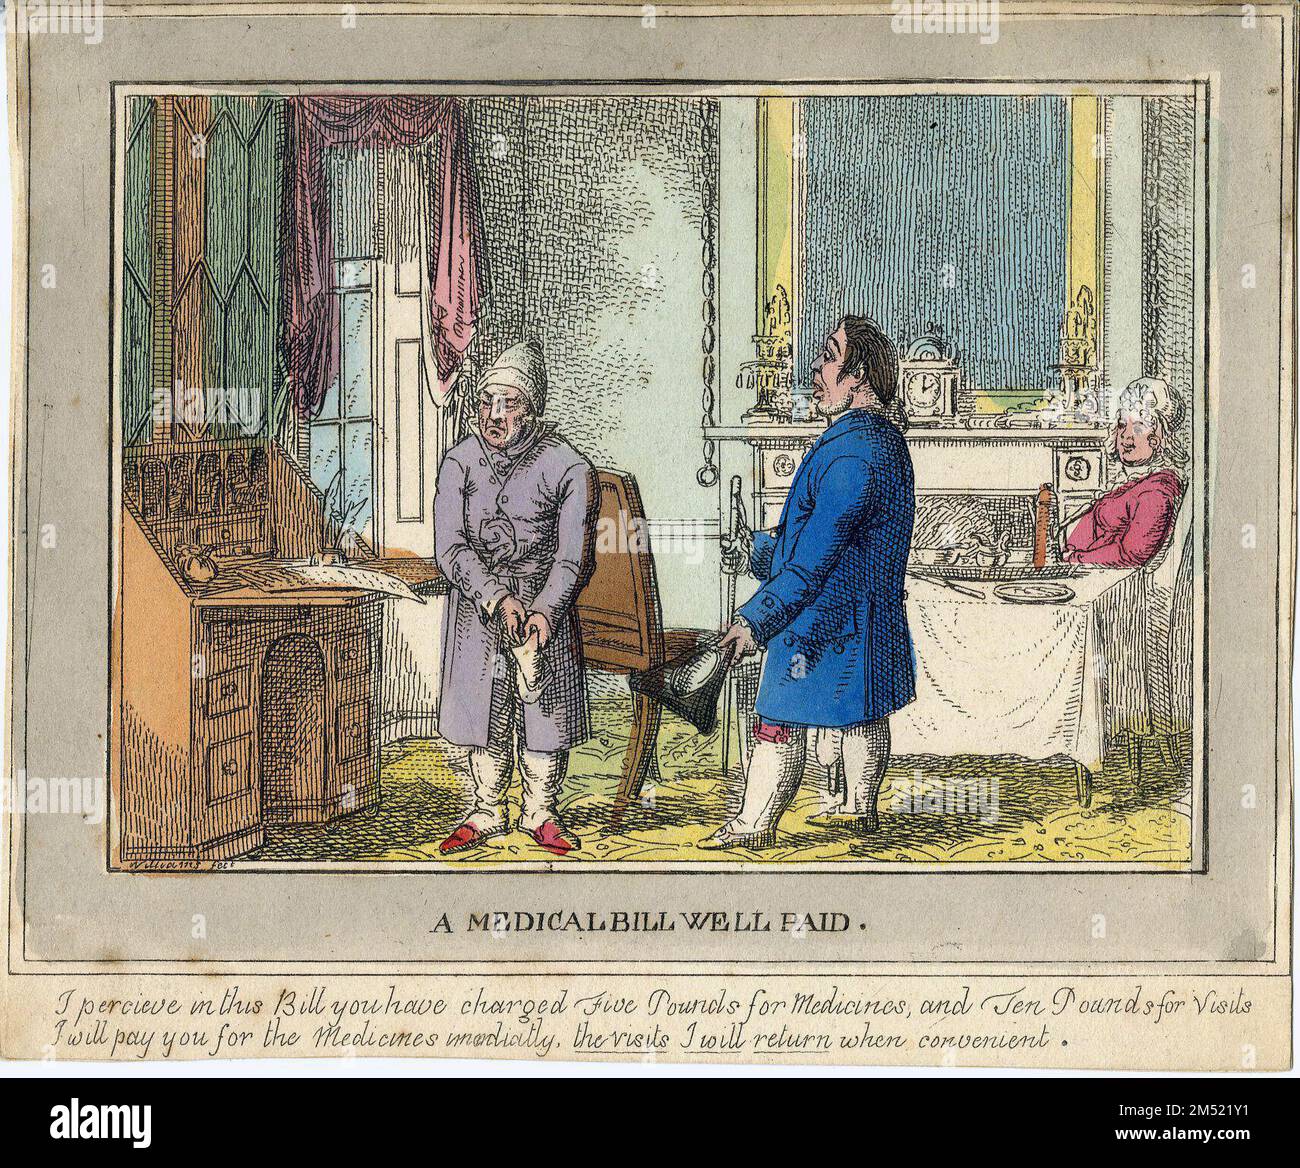 Uno de los cuatro grabados de Charles Williams que tratan sobre las relaciones médico-paciente y el pago de servicios, alrededor de 1823. Foto de stock